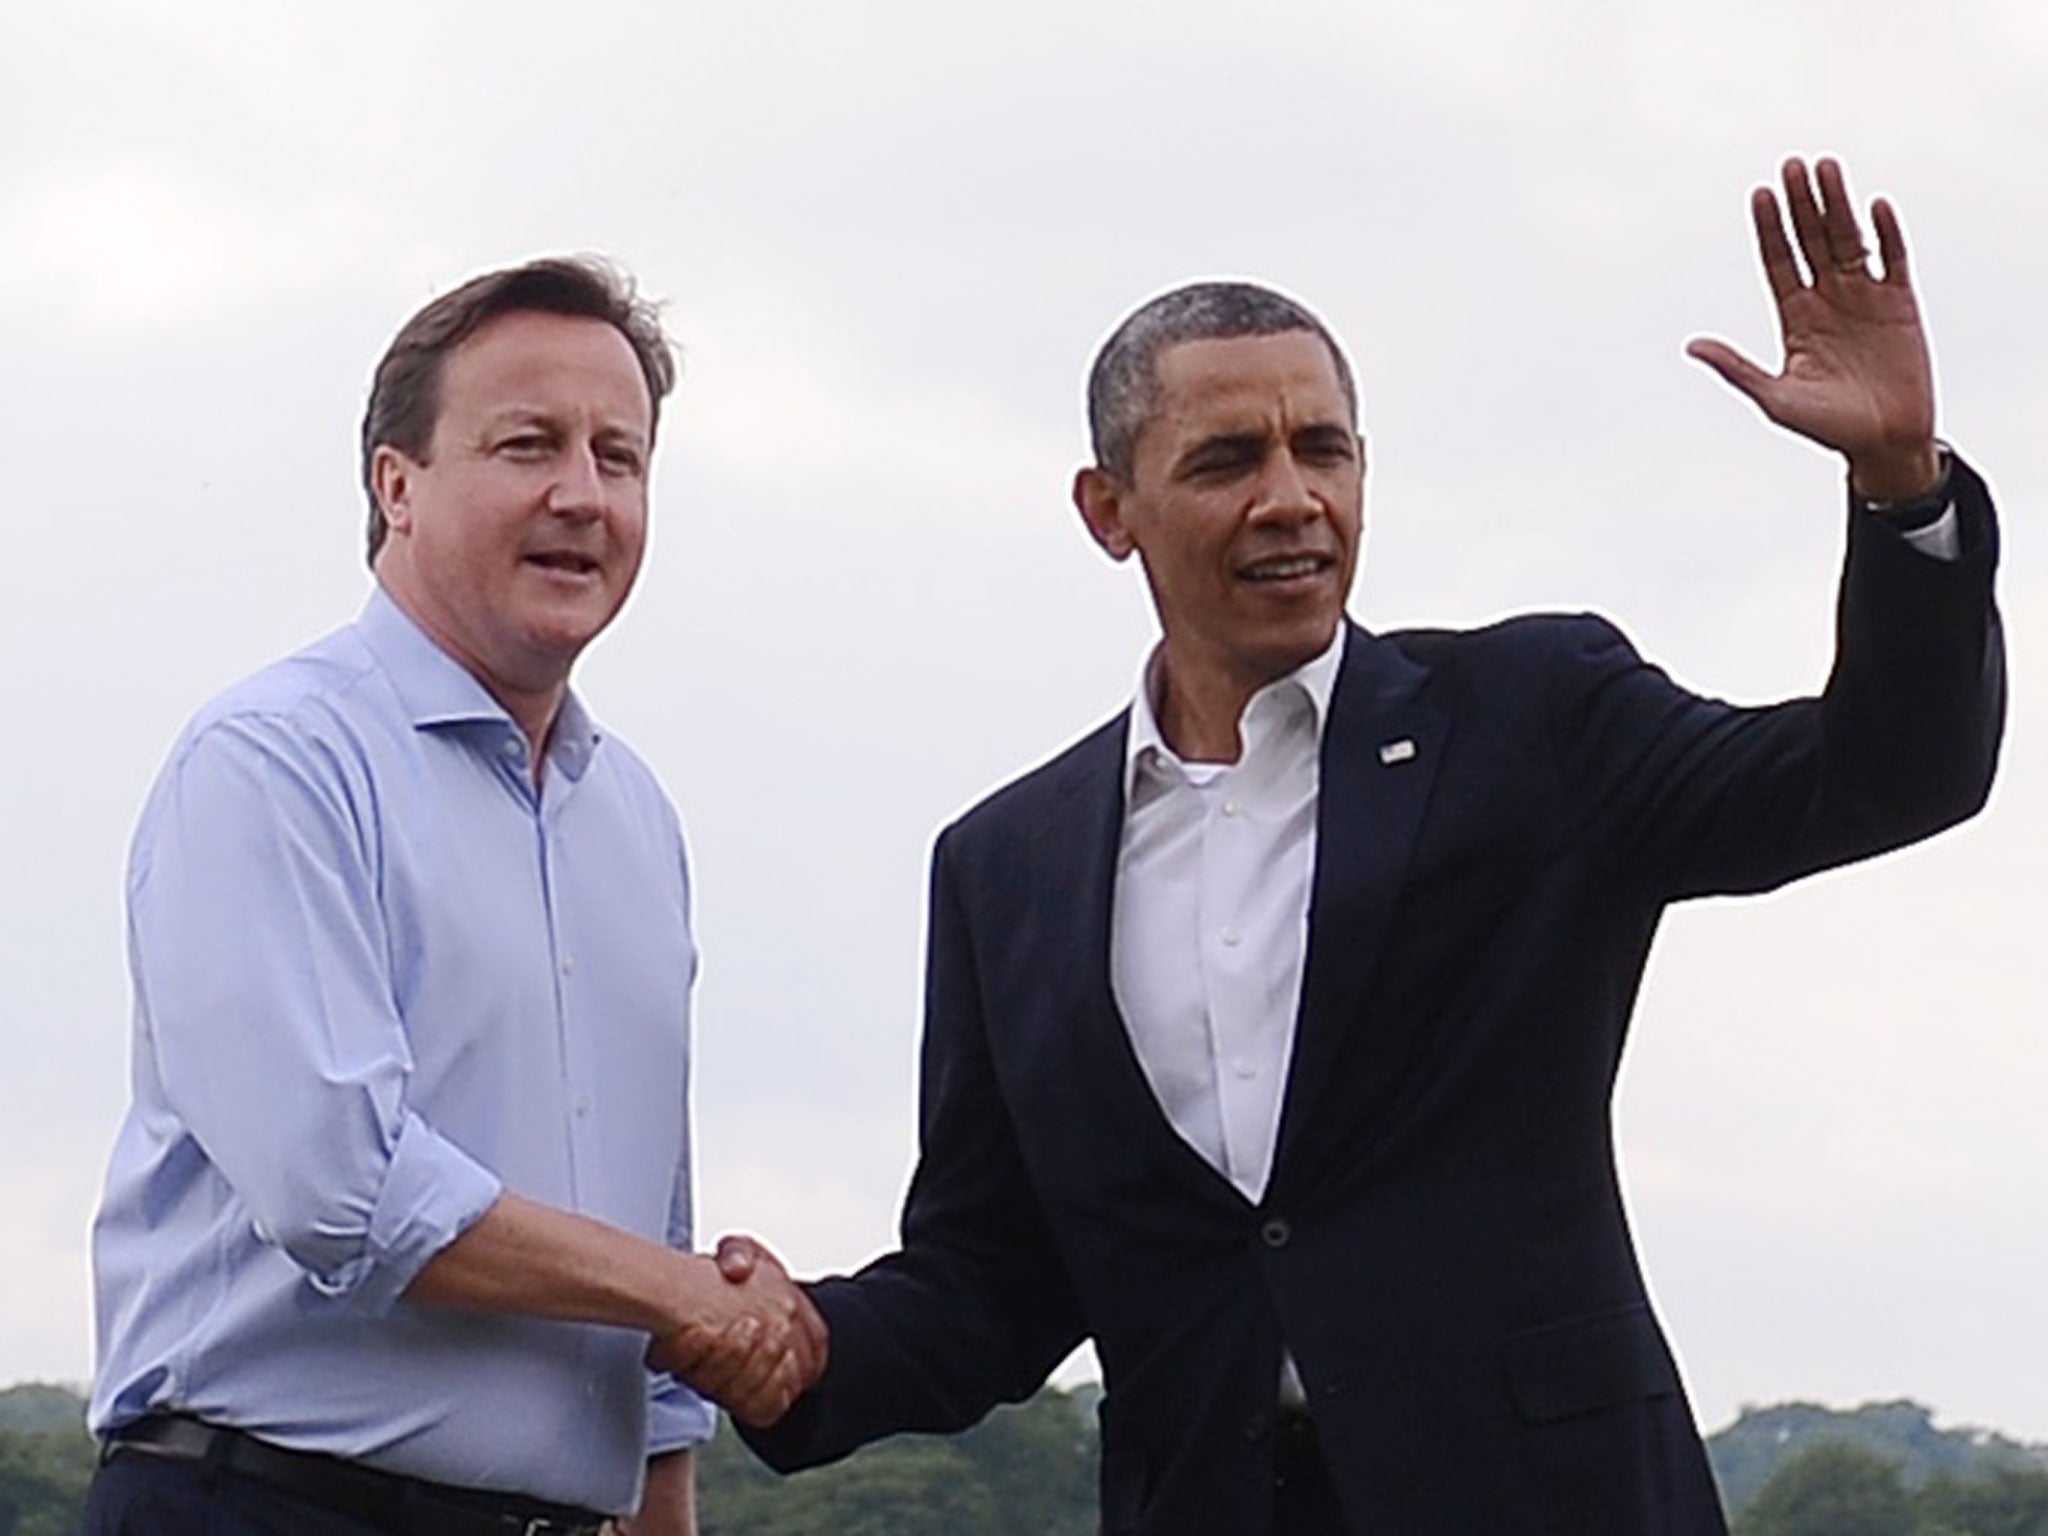 David Cameron launches massive bilateral trade deal between EU and US